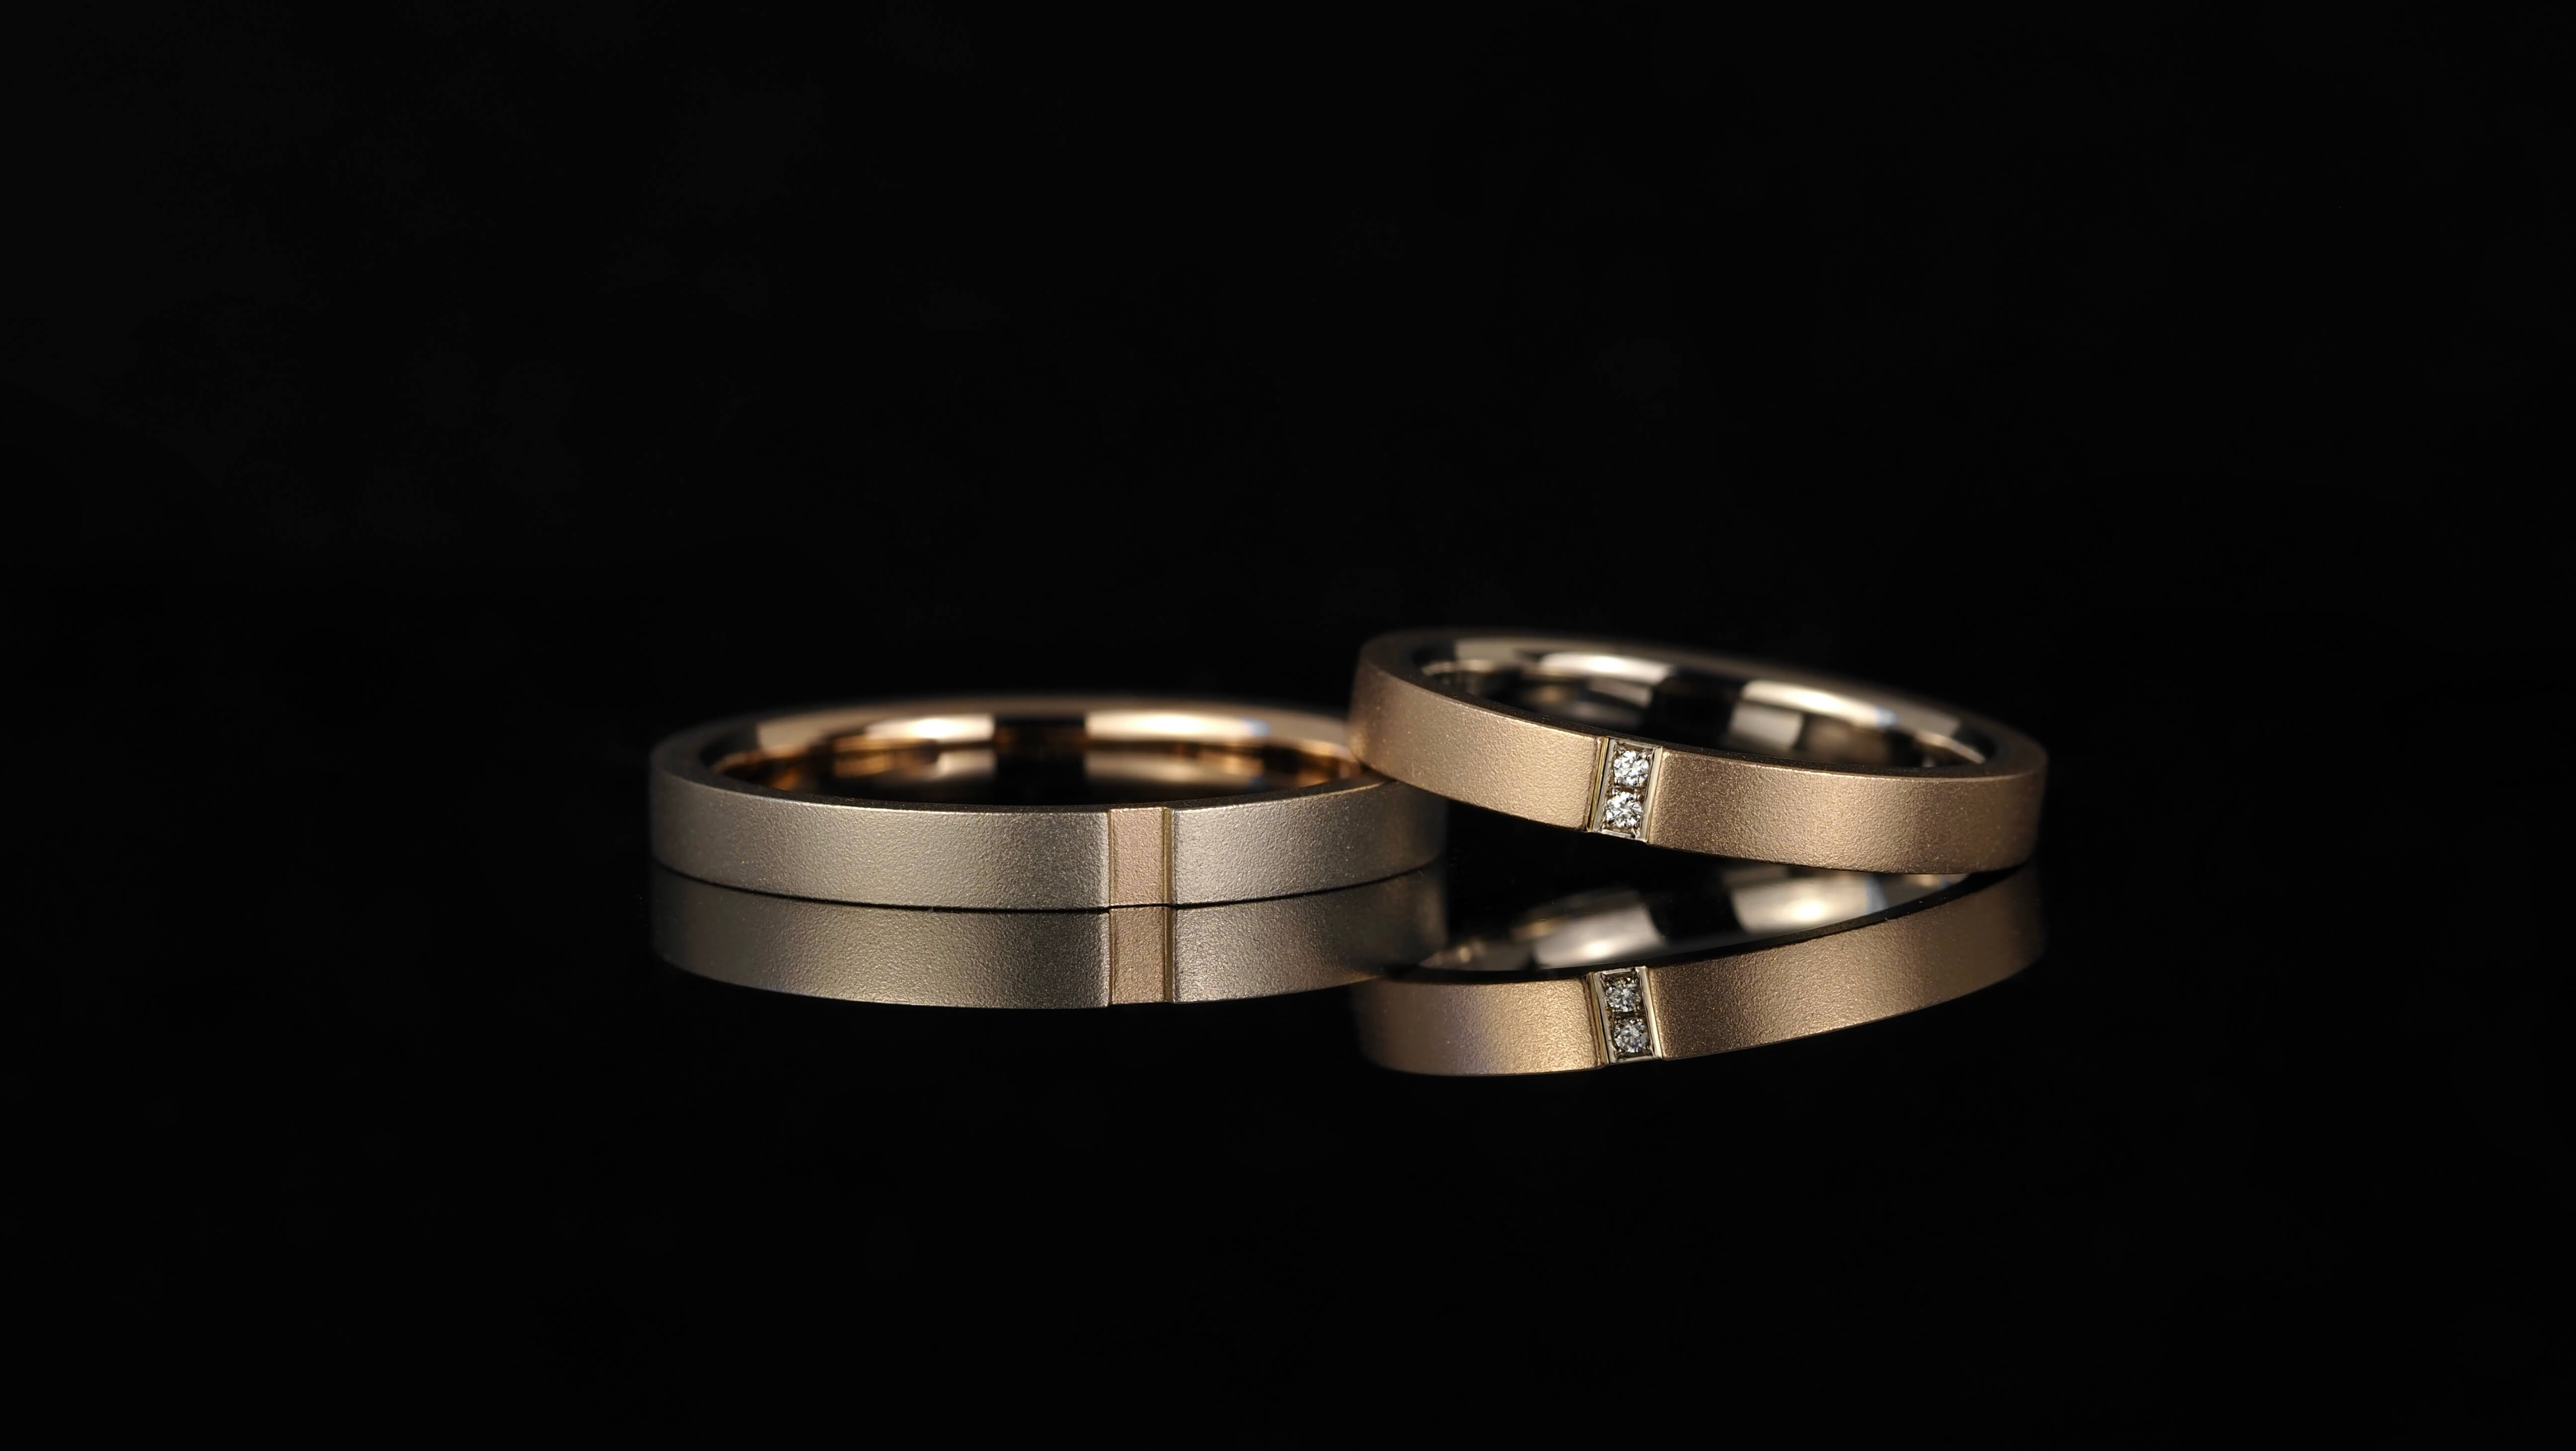 ゴールド系のコンビの結婚指輪。メレダイヤを彫り留めしたフルオーダーマリッジリングです。